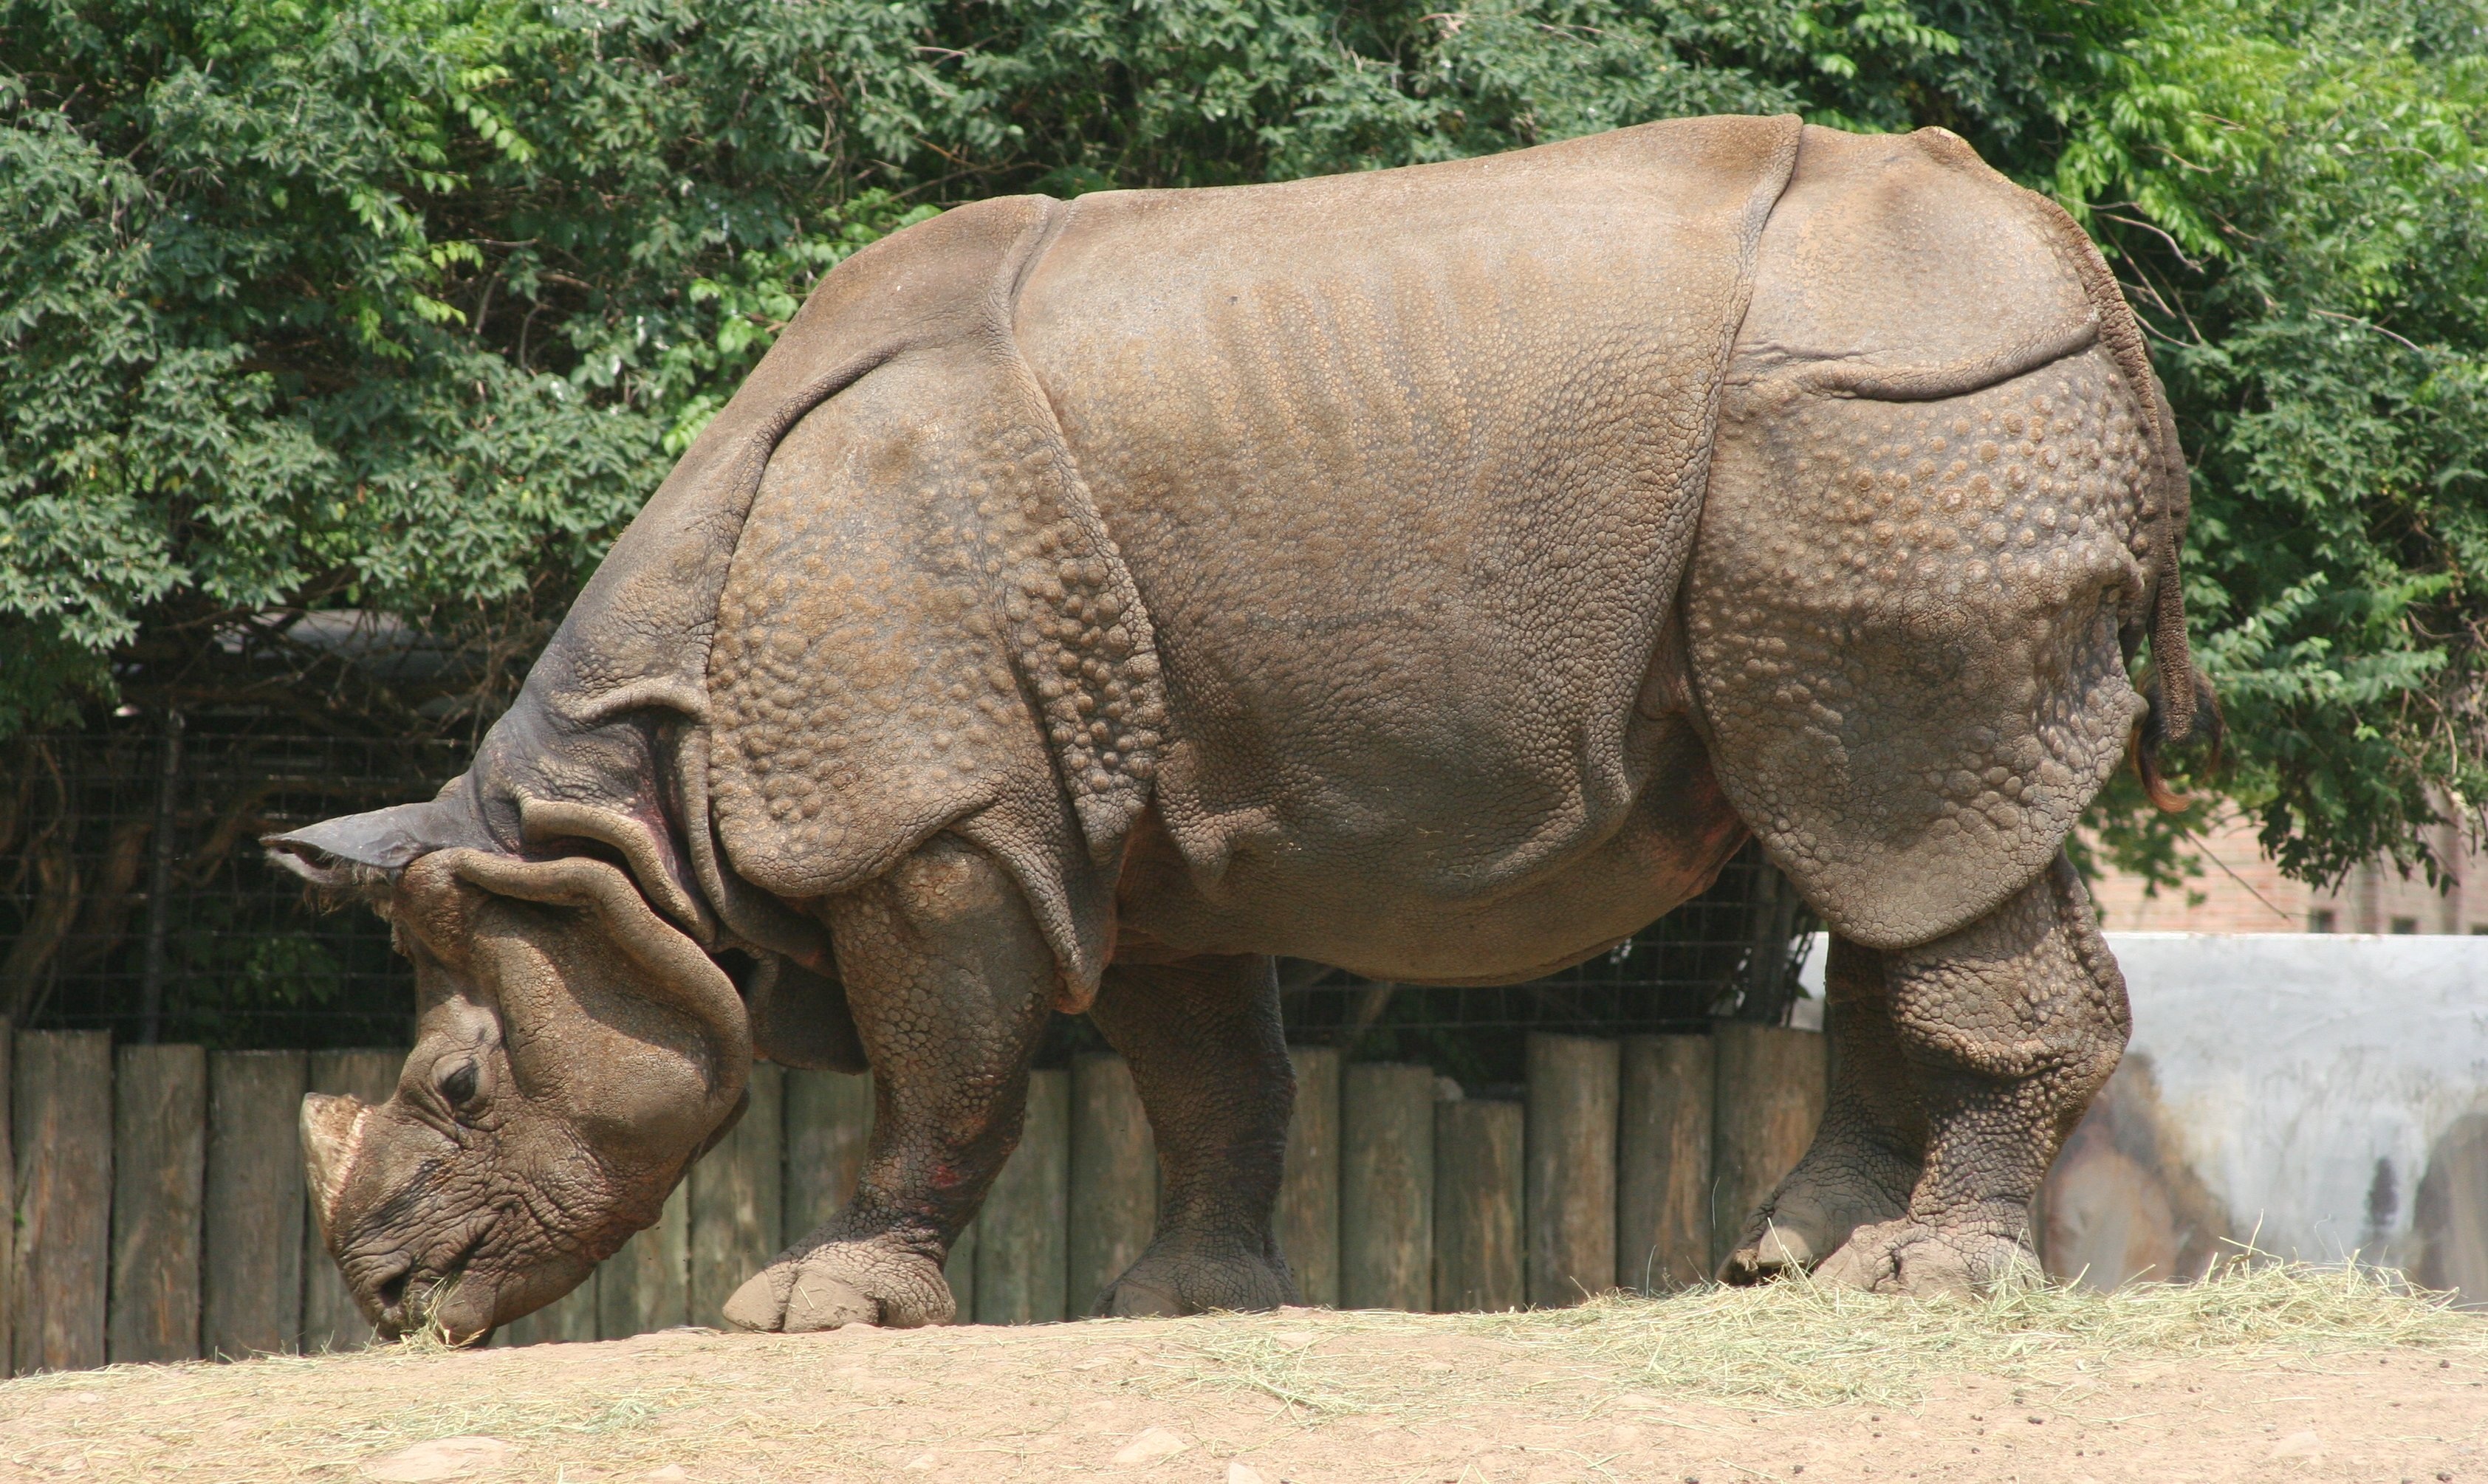 Rhino in the zoo photo